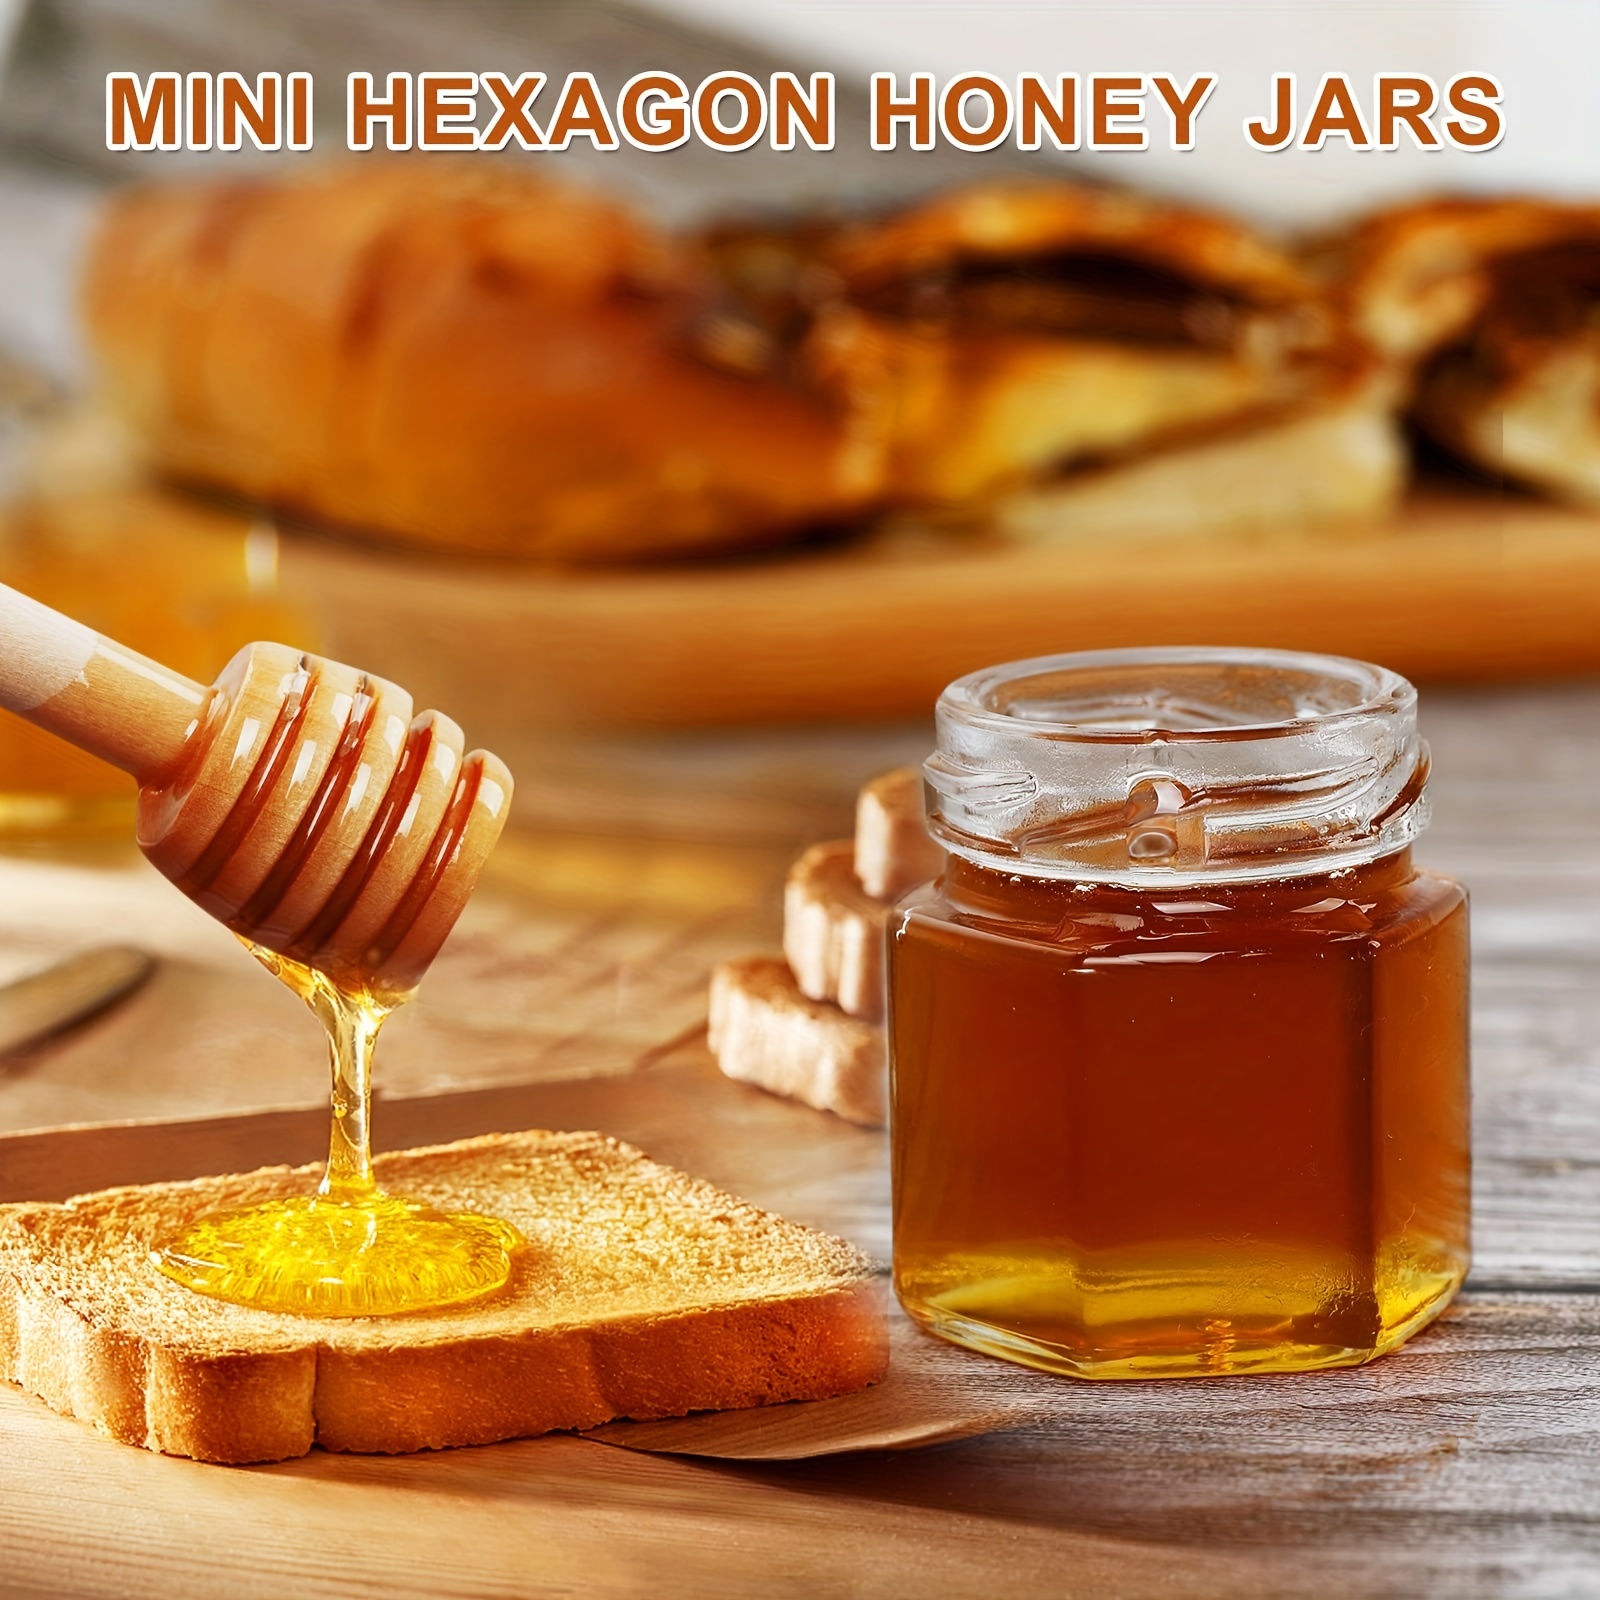 The Honey Jar Bee-luxe Evento, despedida de soltera o recuerdos de boda,  tarro hexagonal de 2 onzas de miel cruda pura con cuchara de miel de madera  y